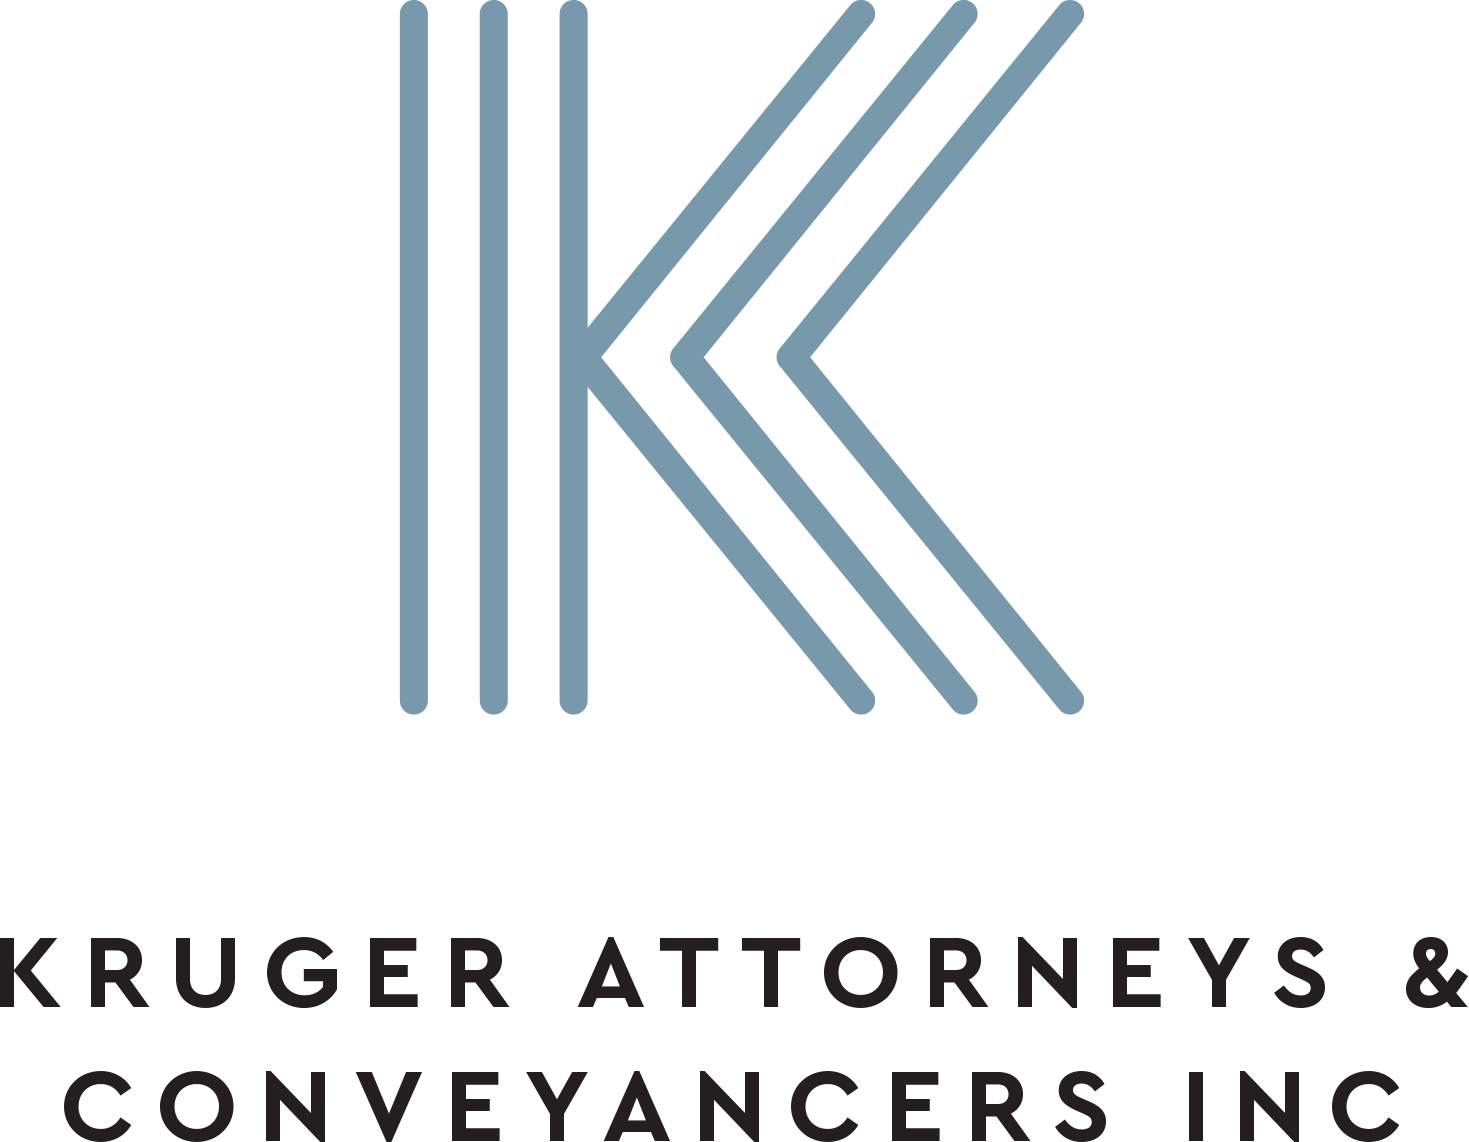 Kruger Attorneys & Conveyancers Inc Logo